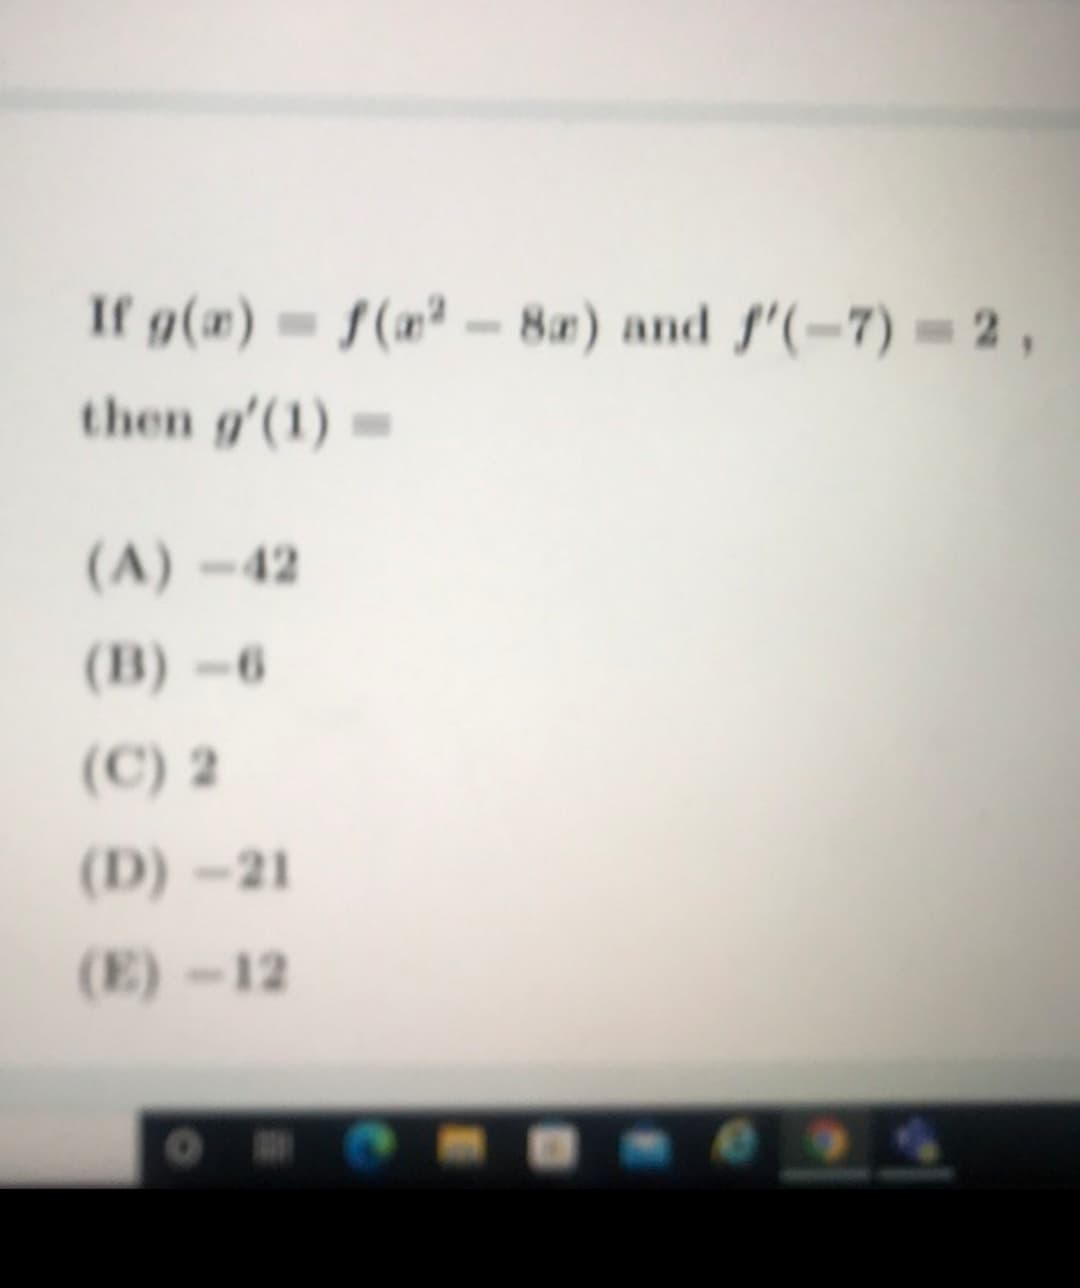 If g(x) = f(n² -8a) and f'(-7) = 2 ,
then g'(1)=
(A)-42
(B) -6
(C) 2
(D)-21
(E)-12
